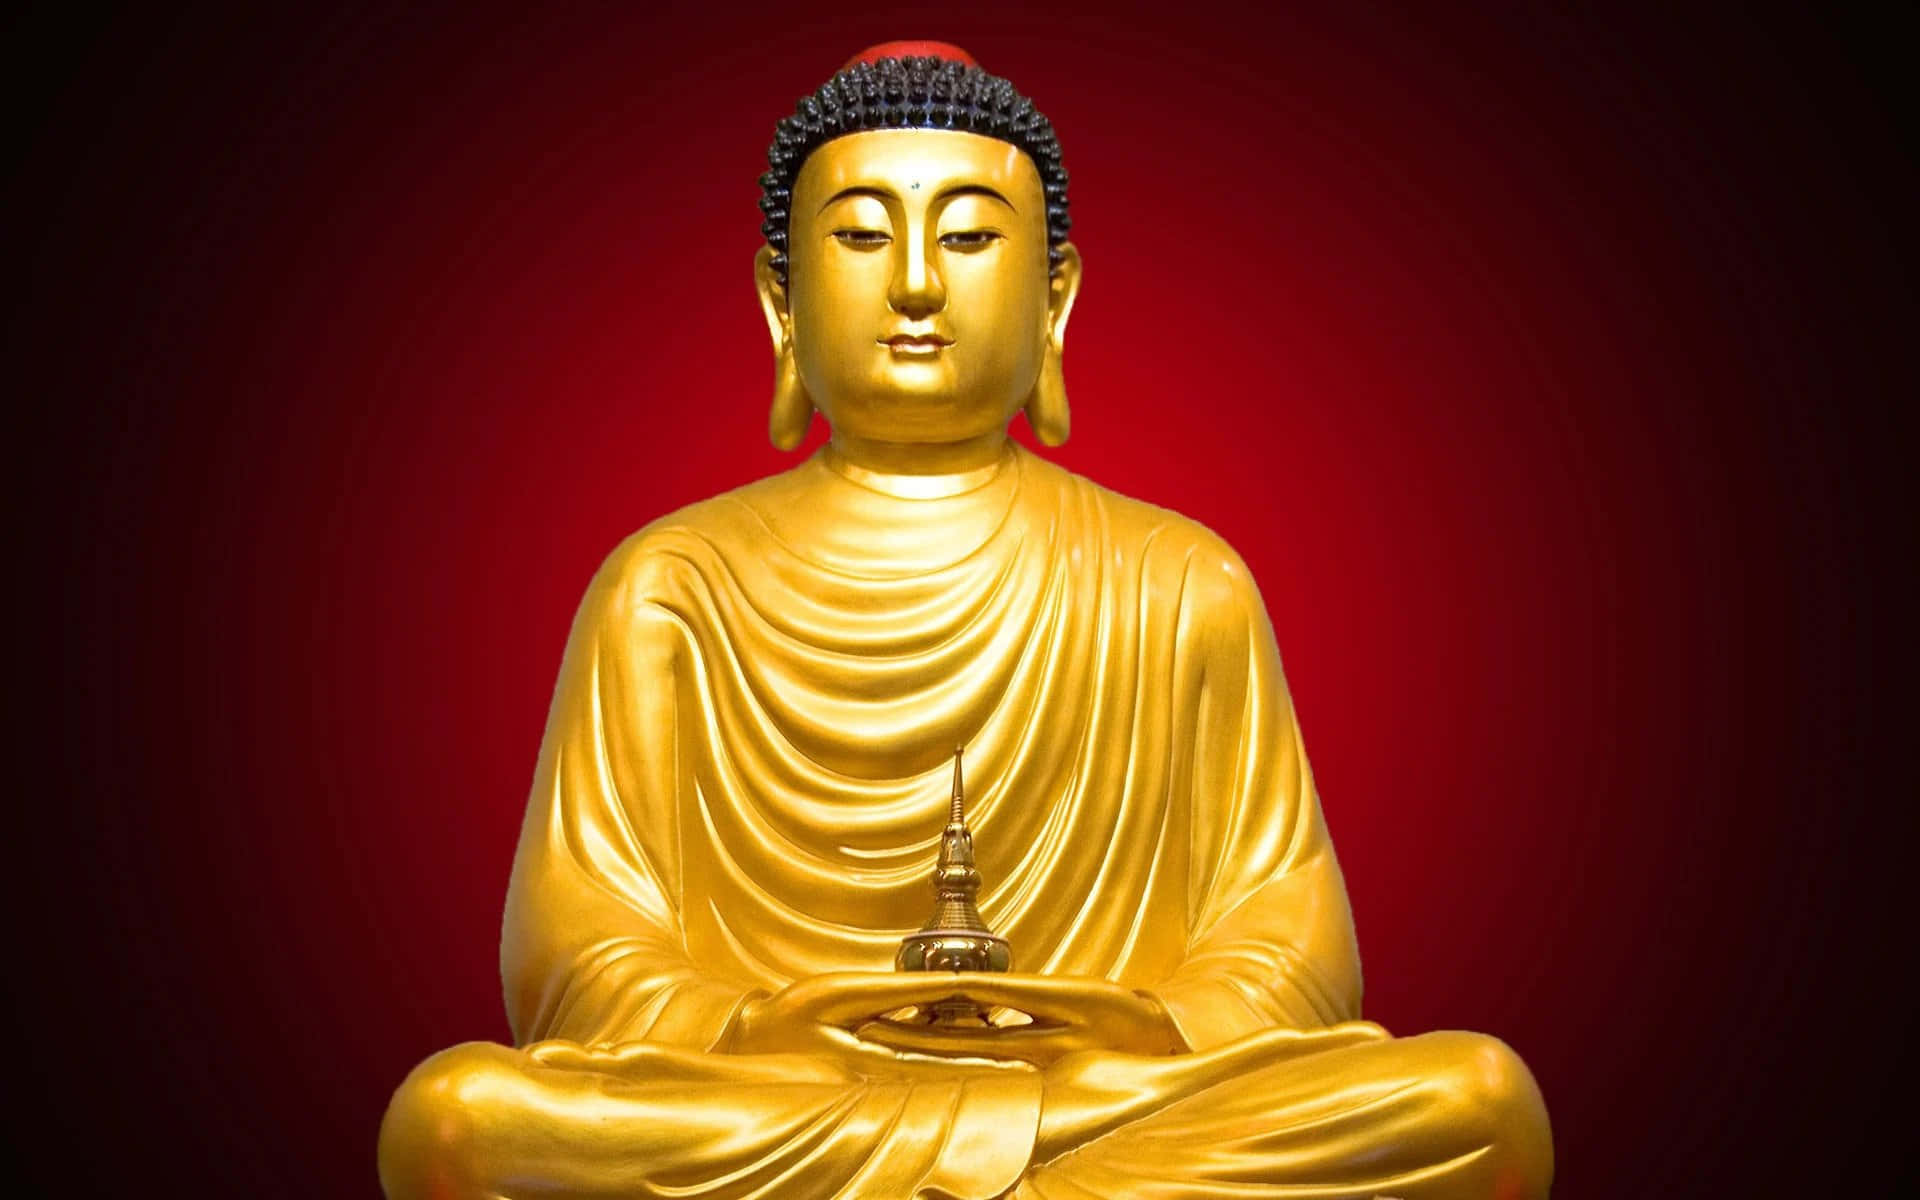 Närgautama Buddha Befinner Sig I Djup Meditation Under Bodhiträdet, Upplever Han Upplysning.